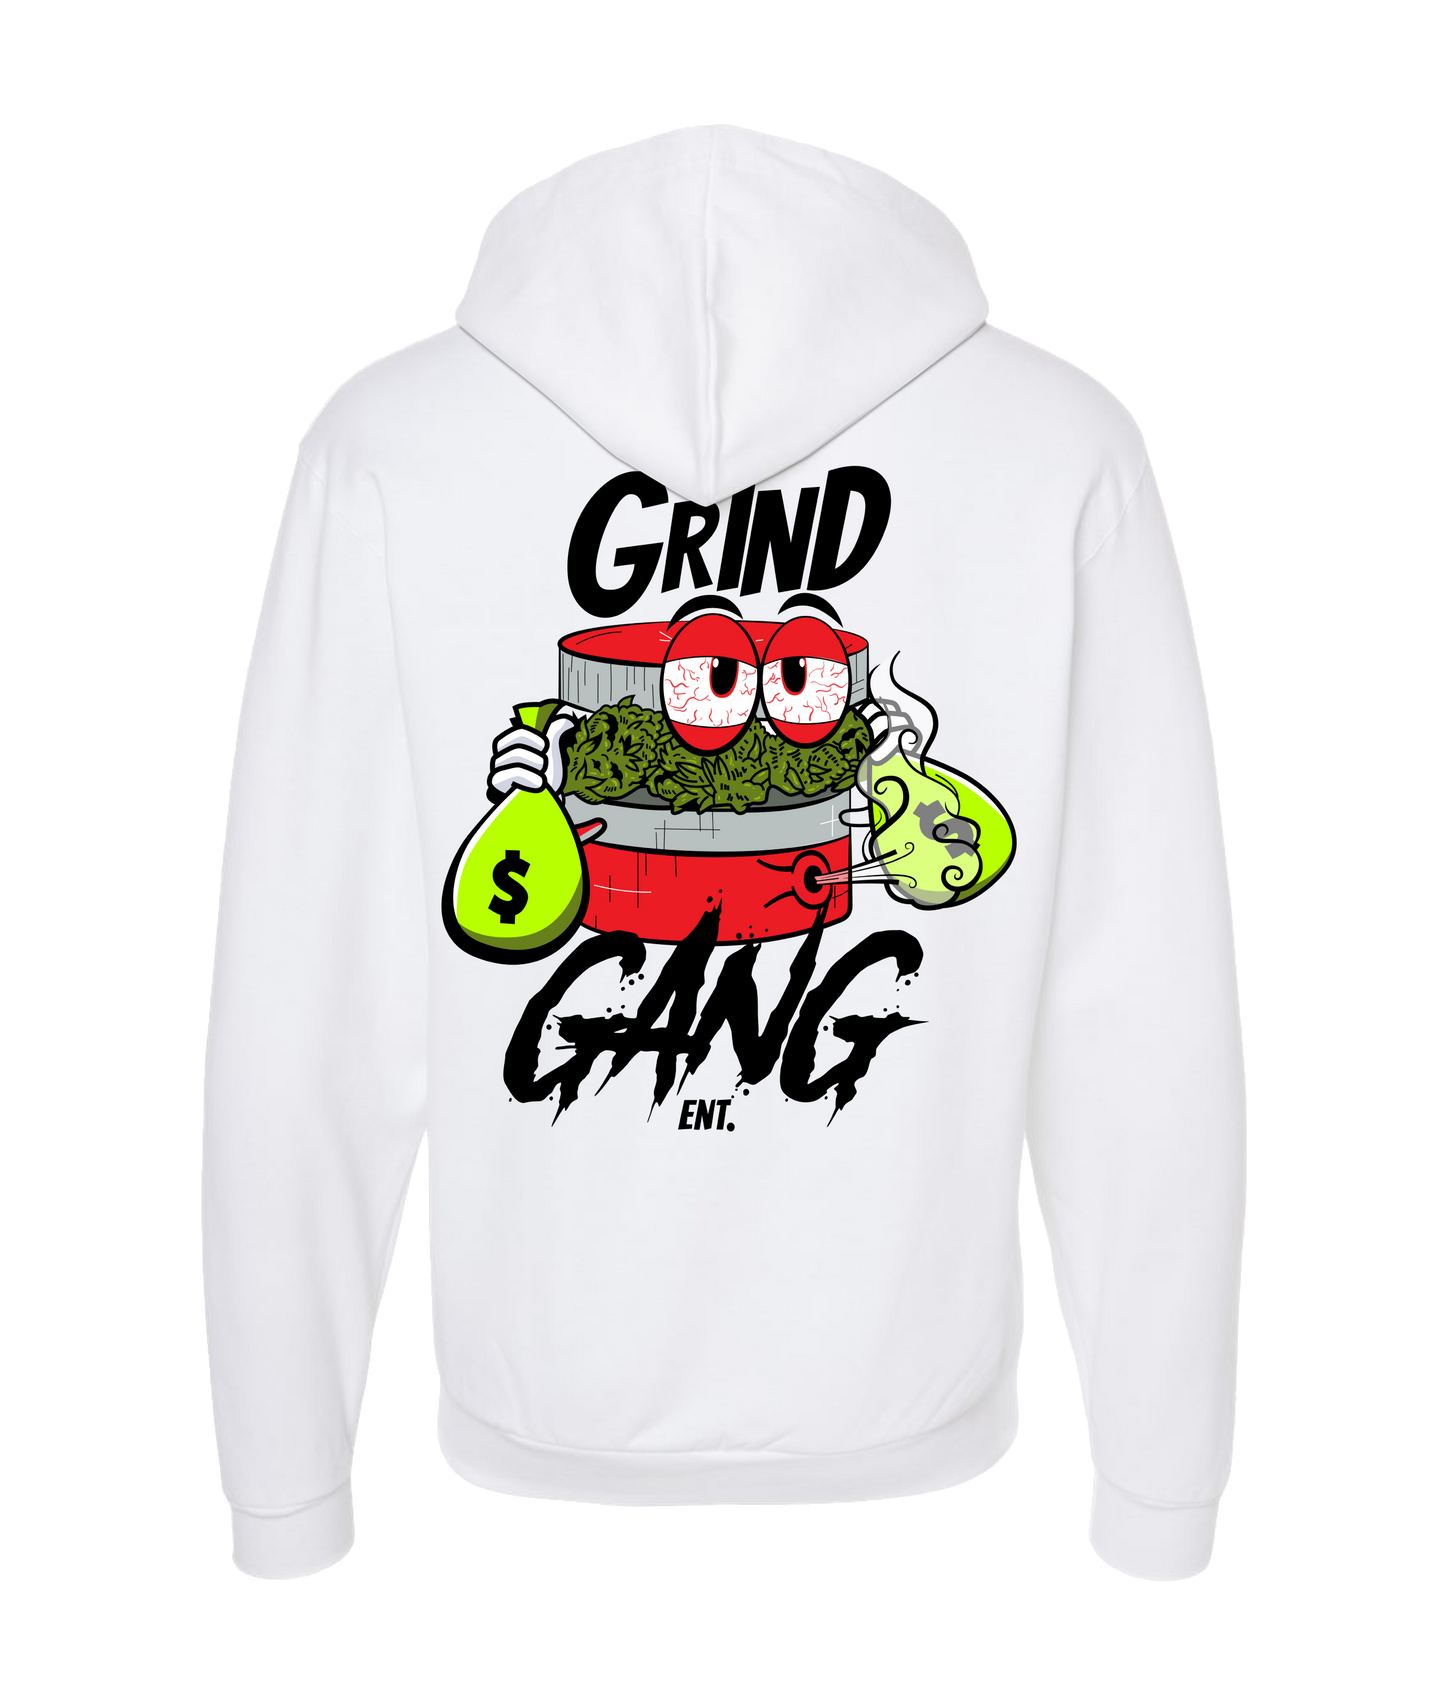 GRIND GANG ENT. LLC - RED GRINNDER - White Zip Up Hoodie